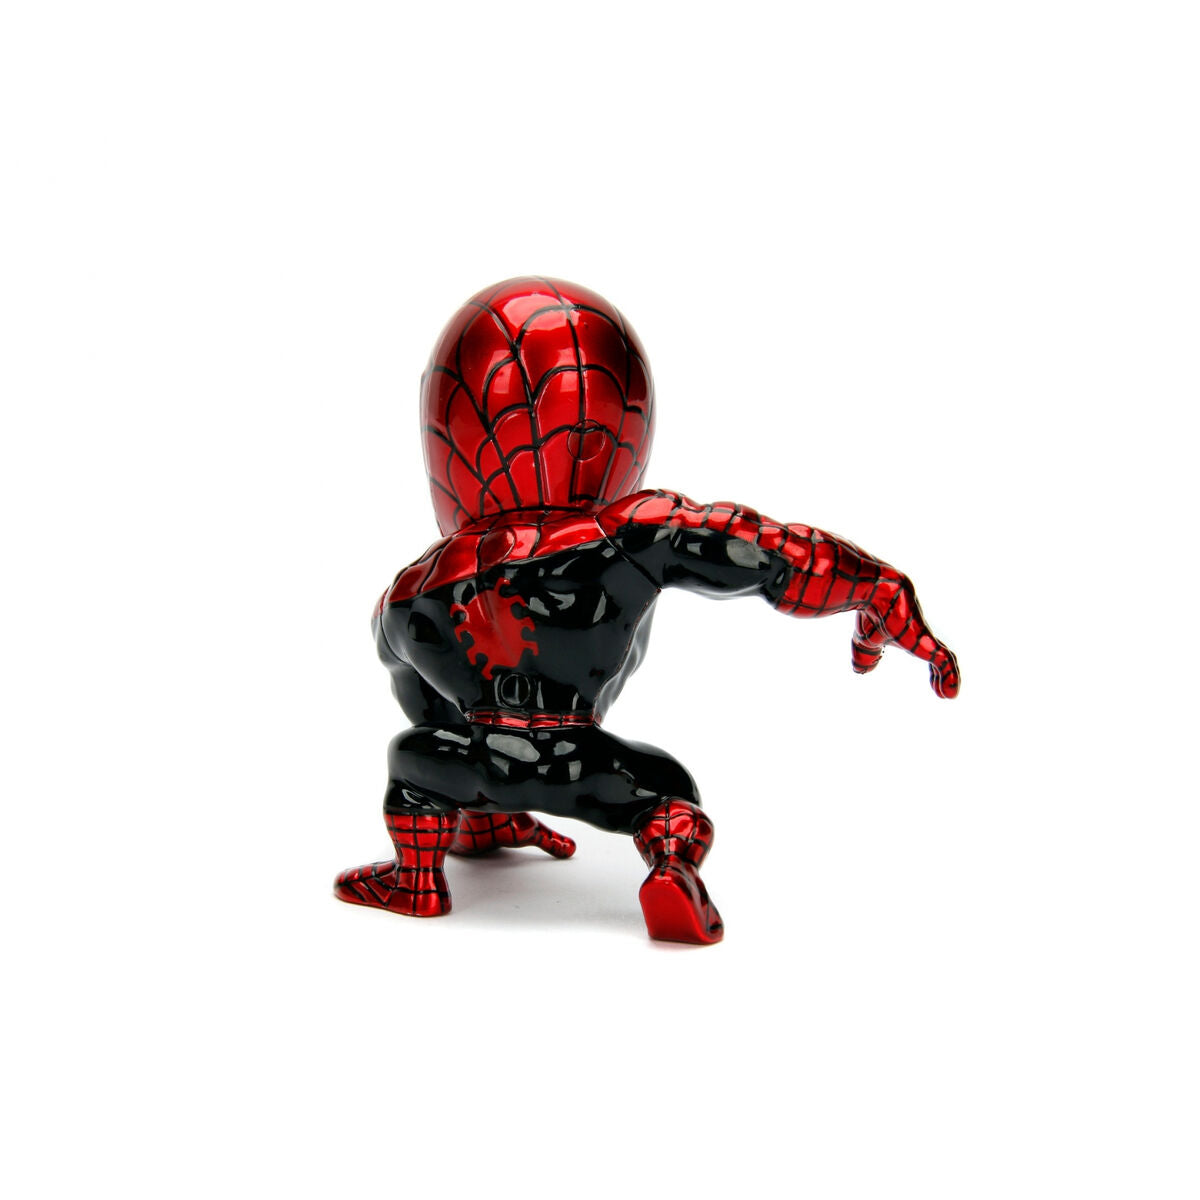 Actionfigurer Spider-Man 10 cm-Leksaker och spel, Dockor och actionfigurer-Spider-Man-peaceofhome.se